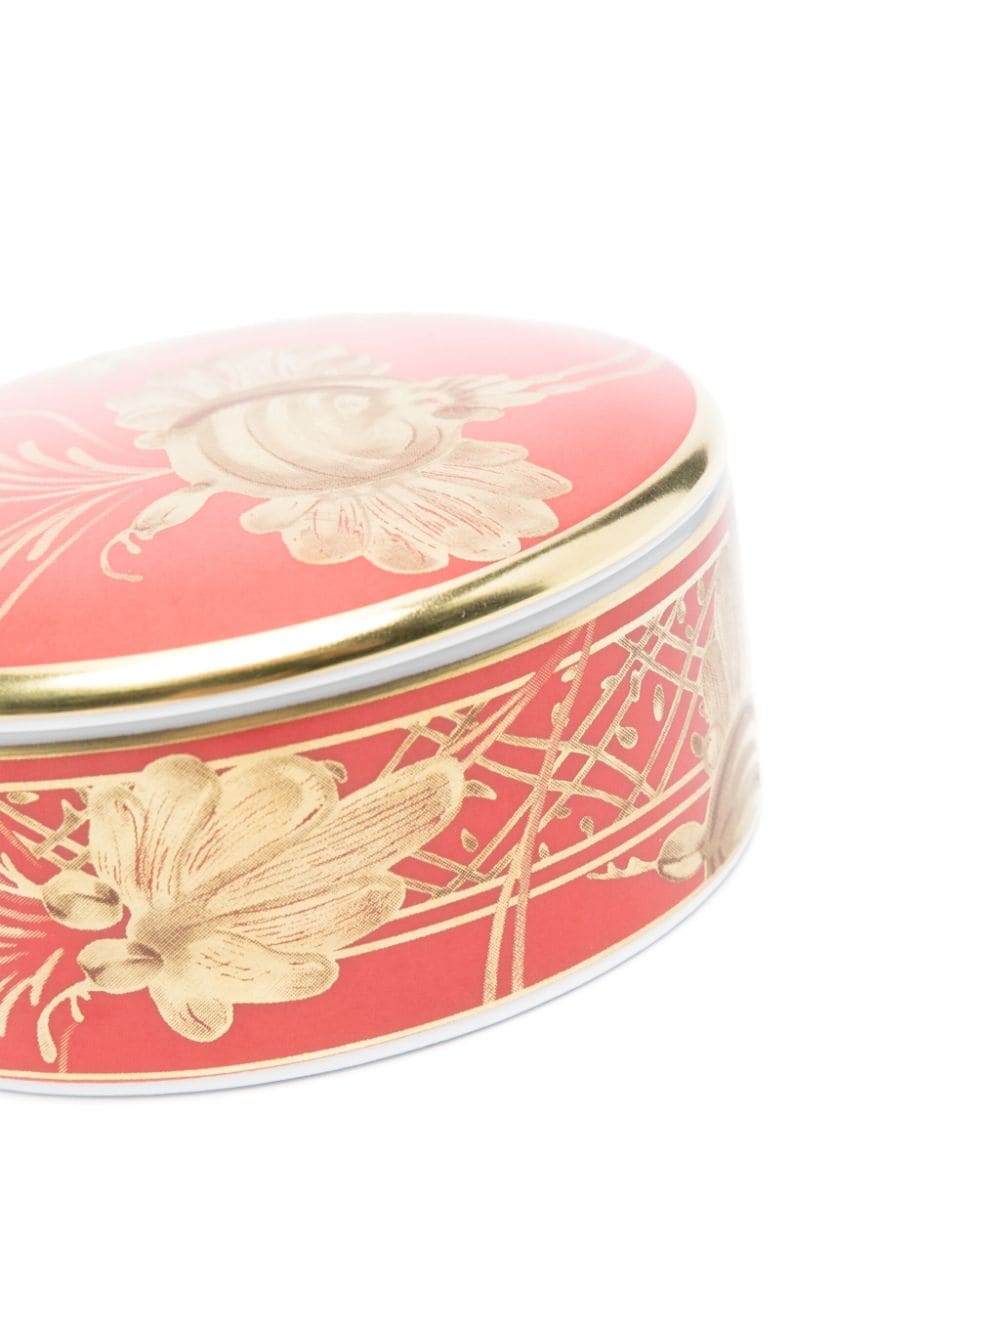 GINORI 1735 Oriente Italiano porcelain scented-stone box - Rood